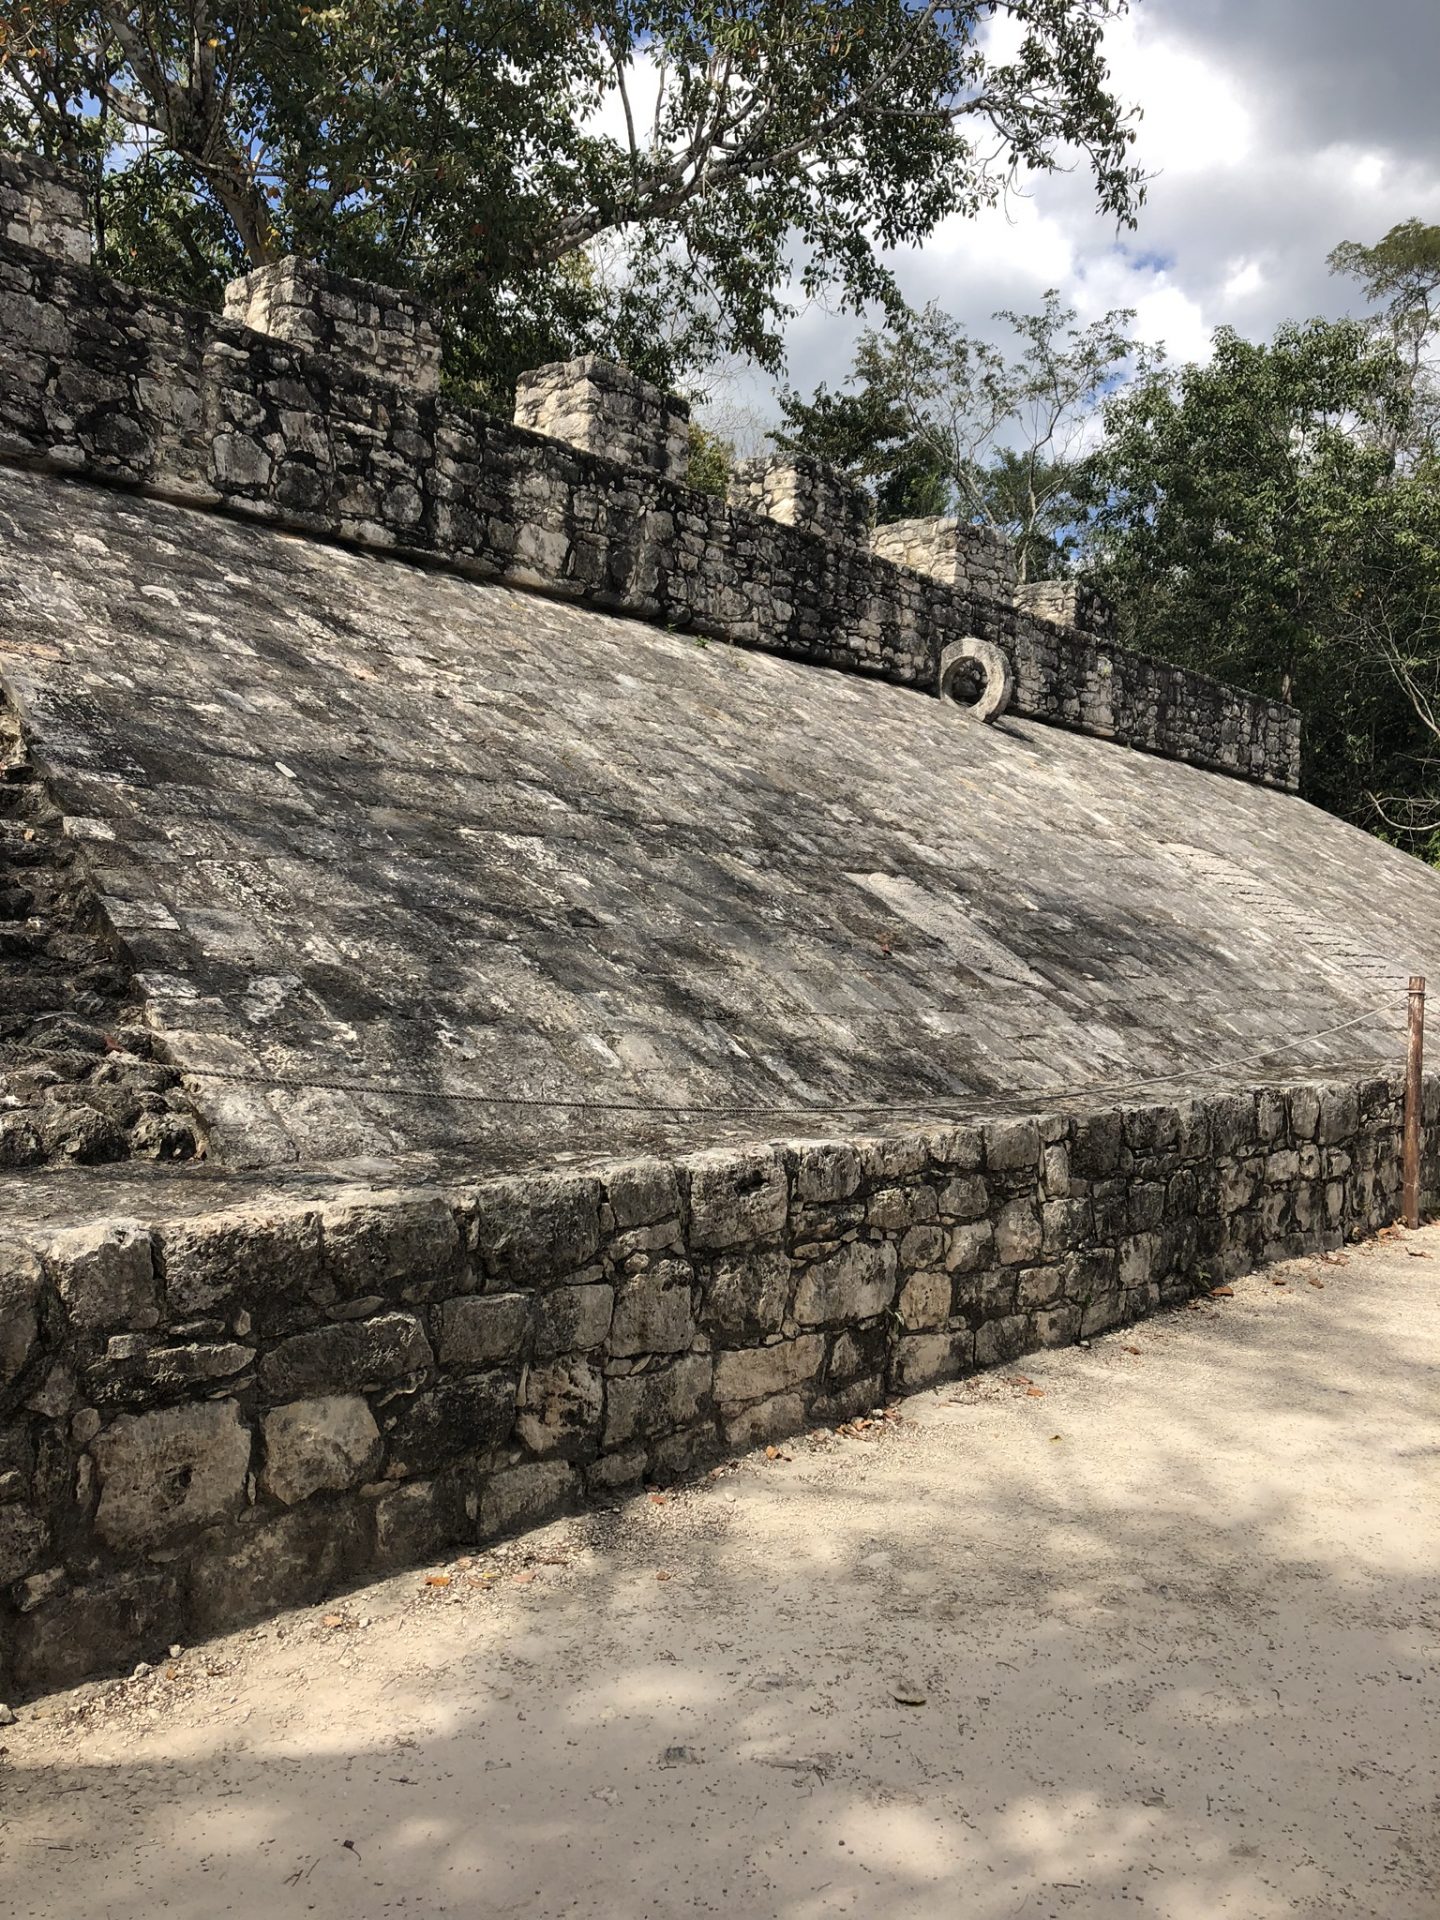 Mayan ruins in Coba, Mexico